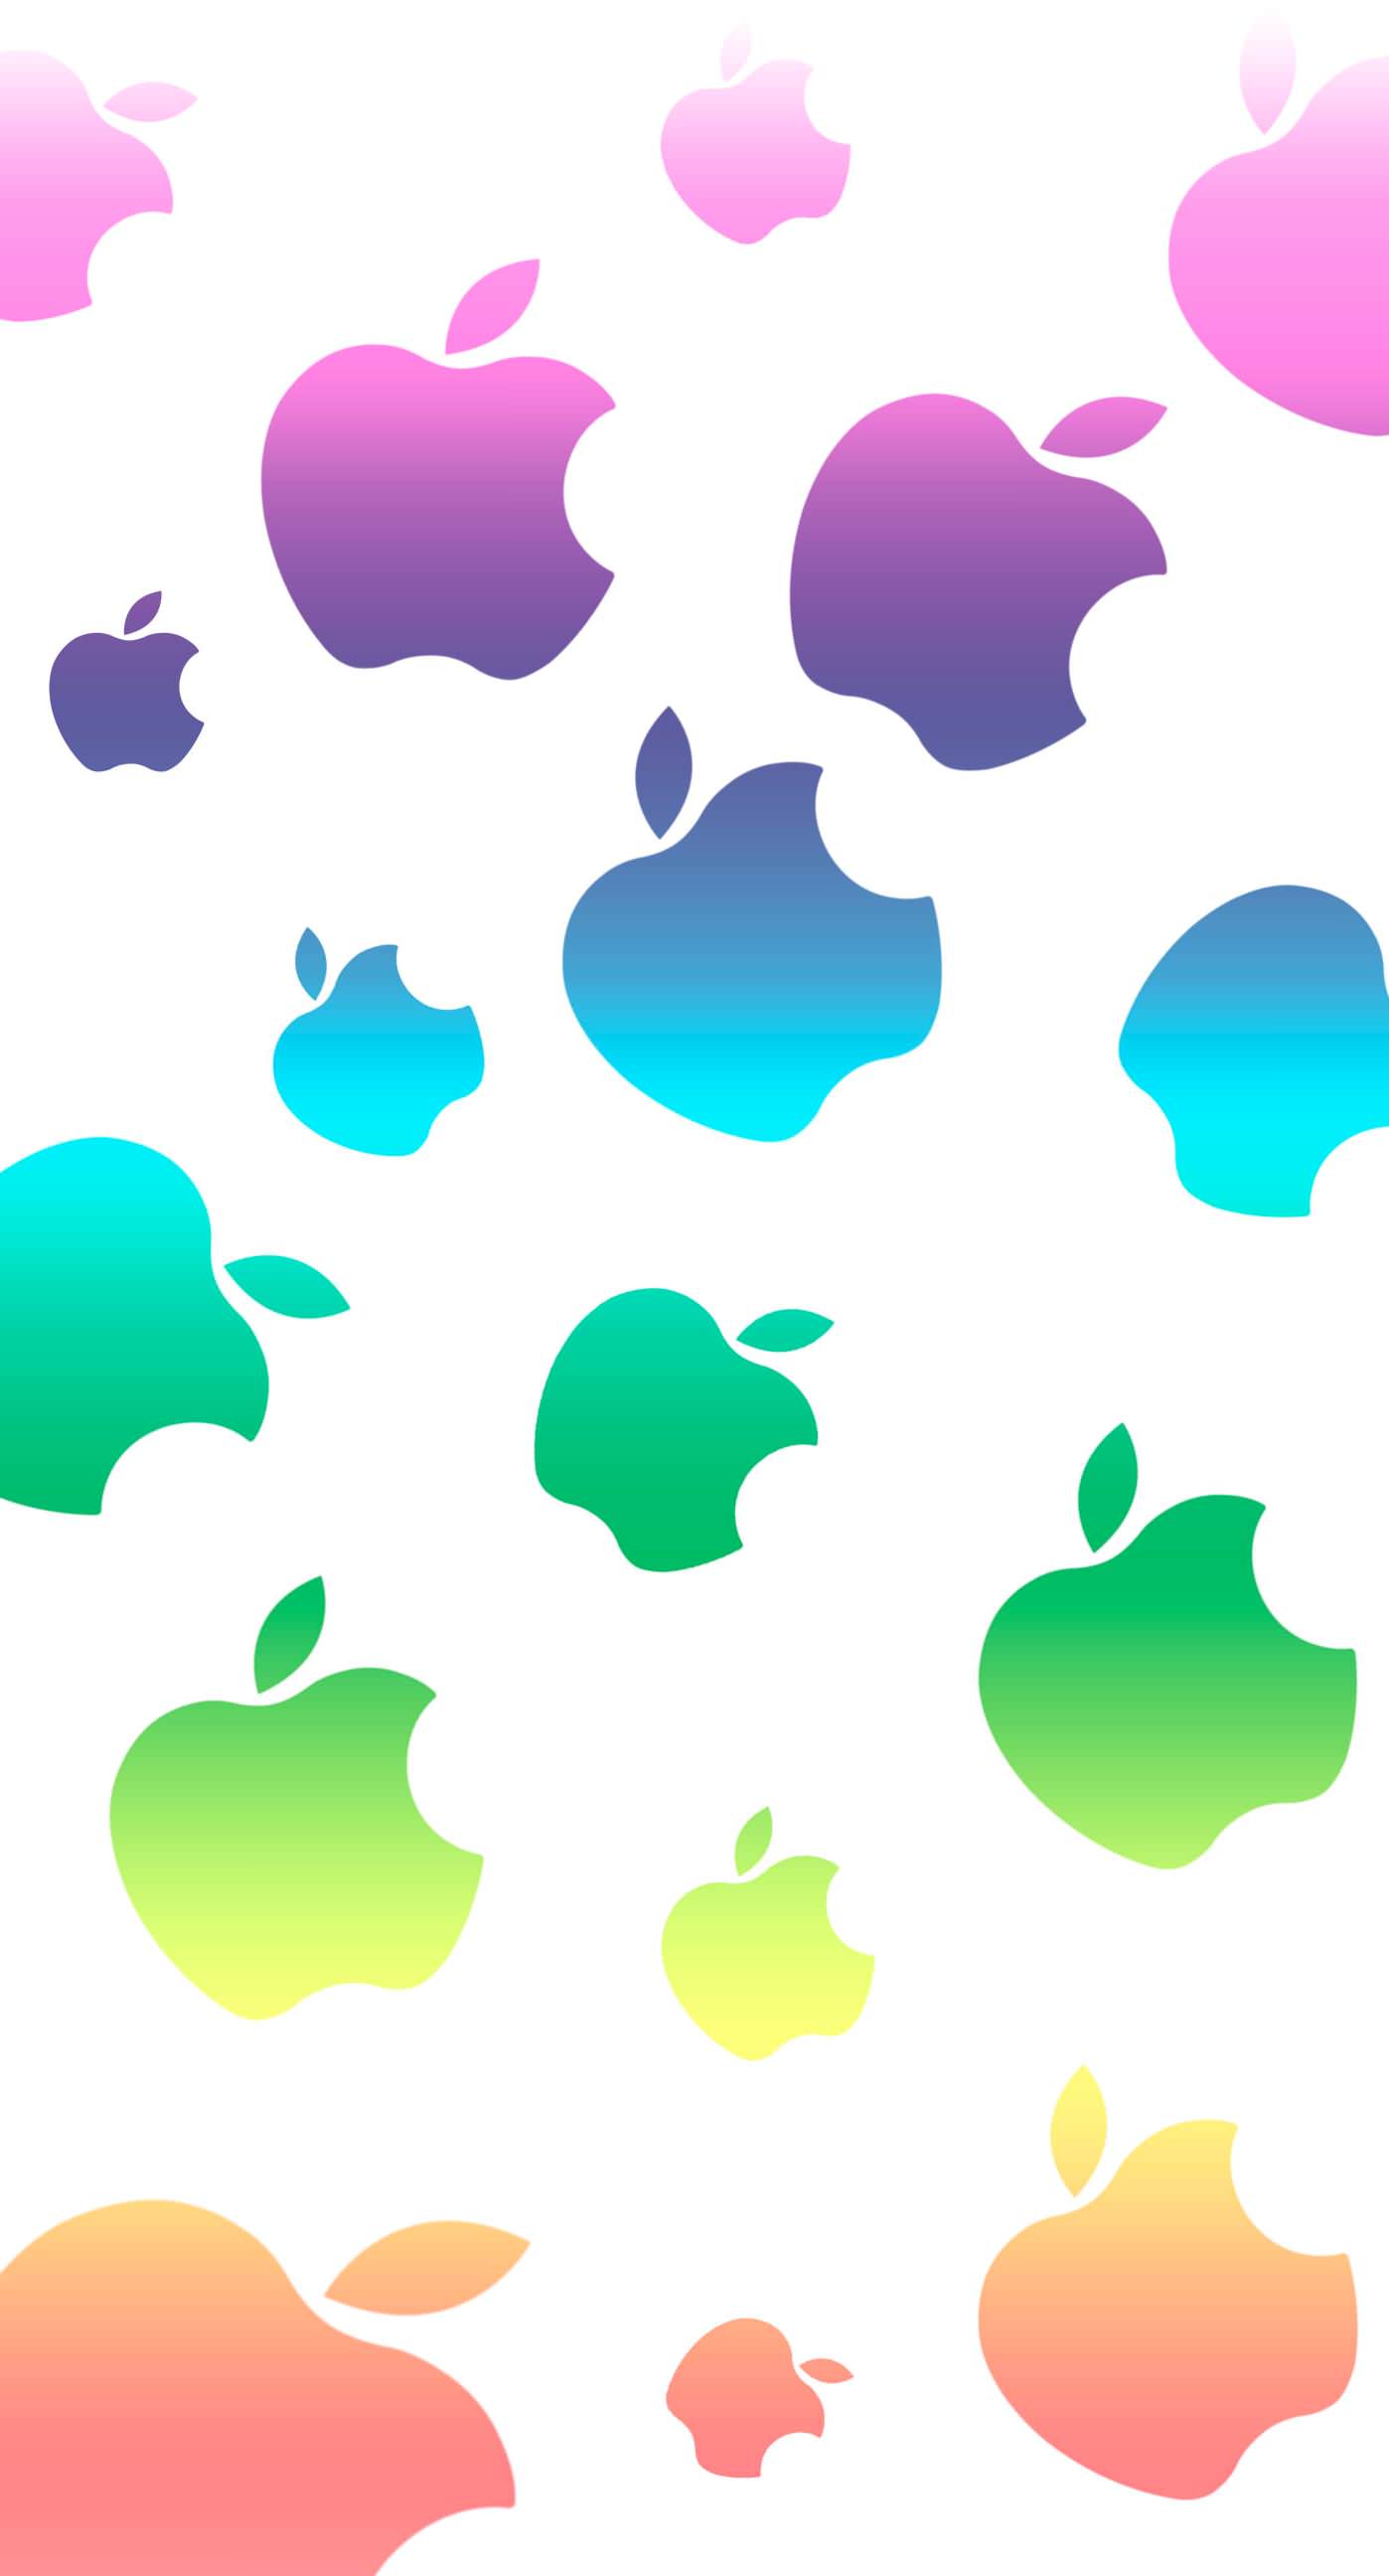 Hãy bổ sung một chút màu sắc cho chiếc iPhone của bạn với hình nền Apple đầy màu sắc dễ thương này. Với những quả táo tươi sáng và hình ảnh vô cùng đáng yêu, chiếc điện thoại của bạn sẽ trở thành tâm điểm thu hút. Hãy nhấn vào hình để thưởng thức.